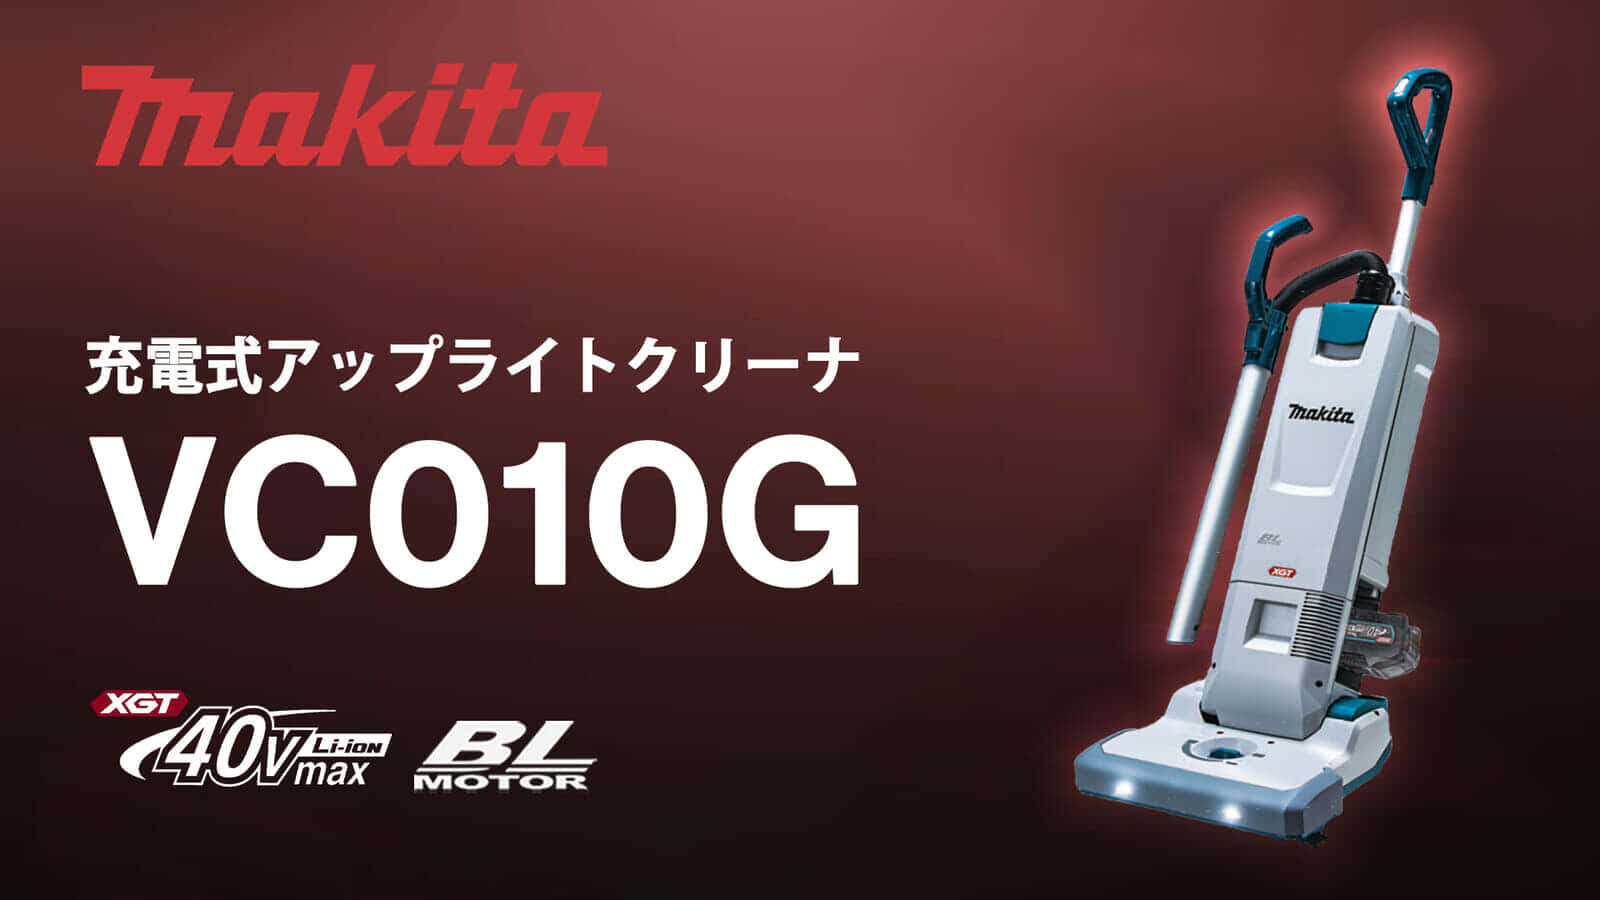 マキタ VC010G 充電式アップライトクリーナを発売、40Vmax対応で清掃効率が向上